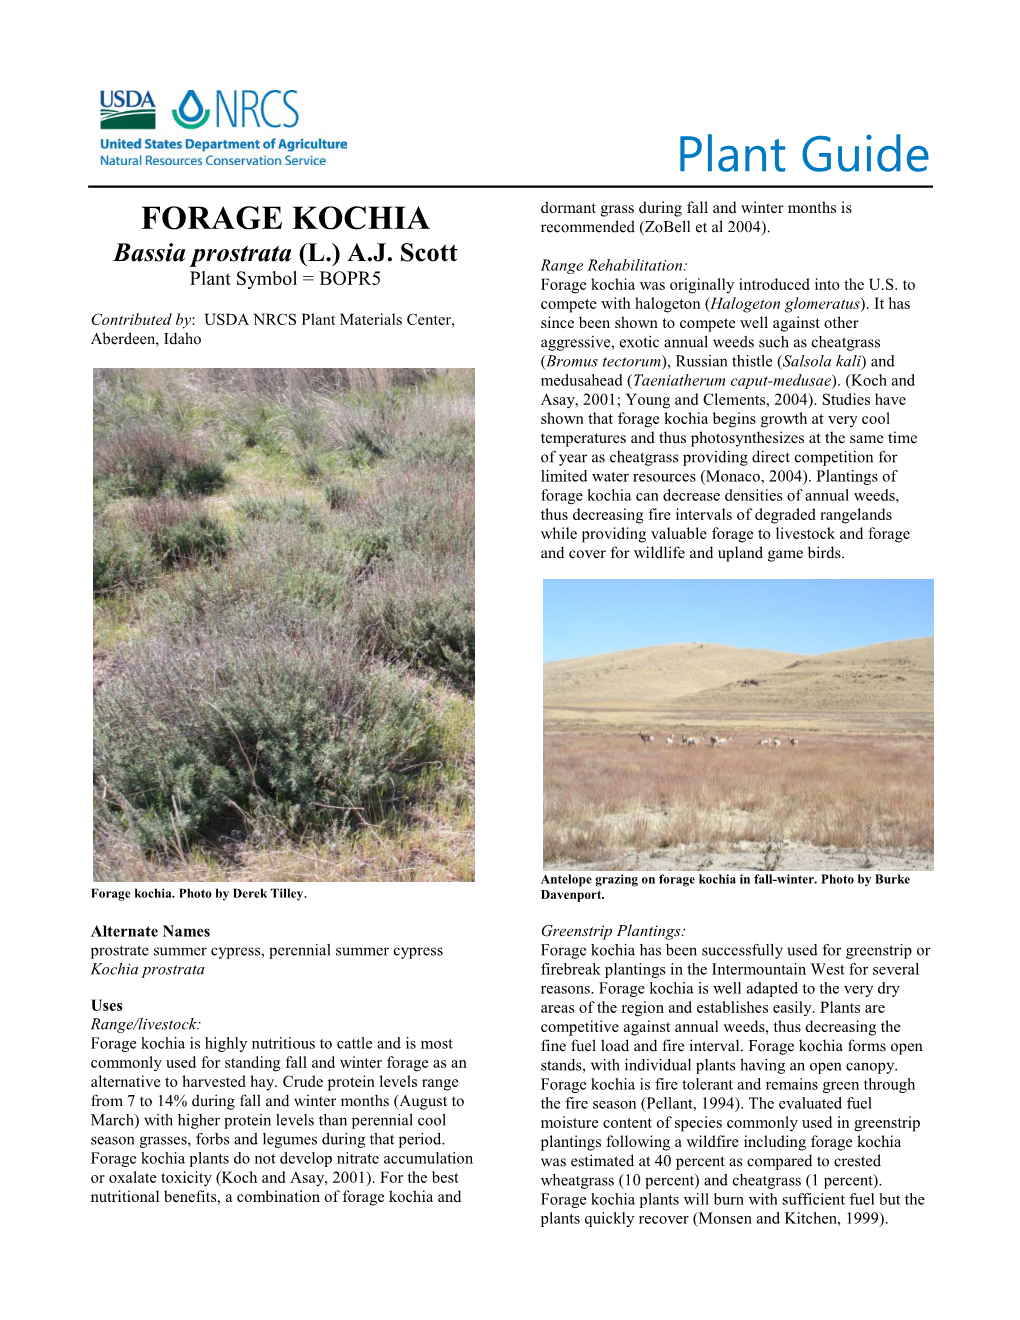 Plant Guide for Forage Kochia (Bassia Prostrata)